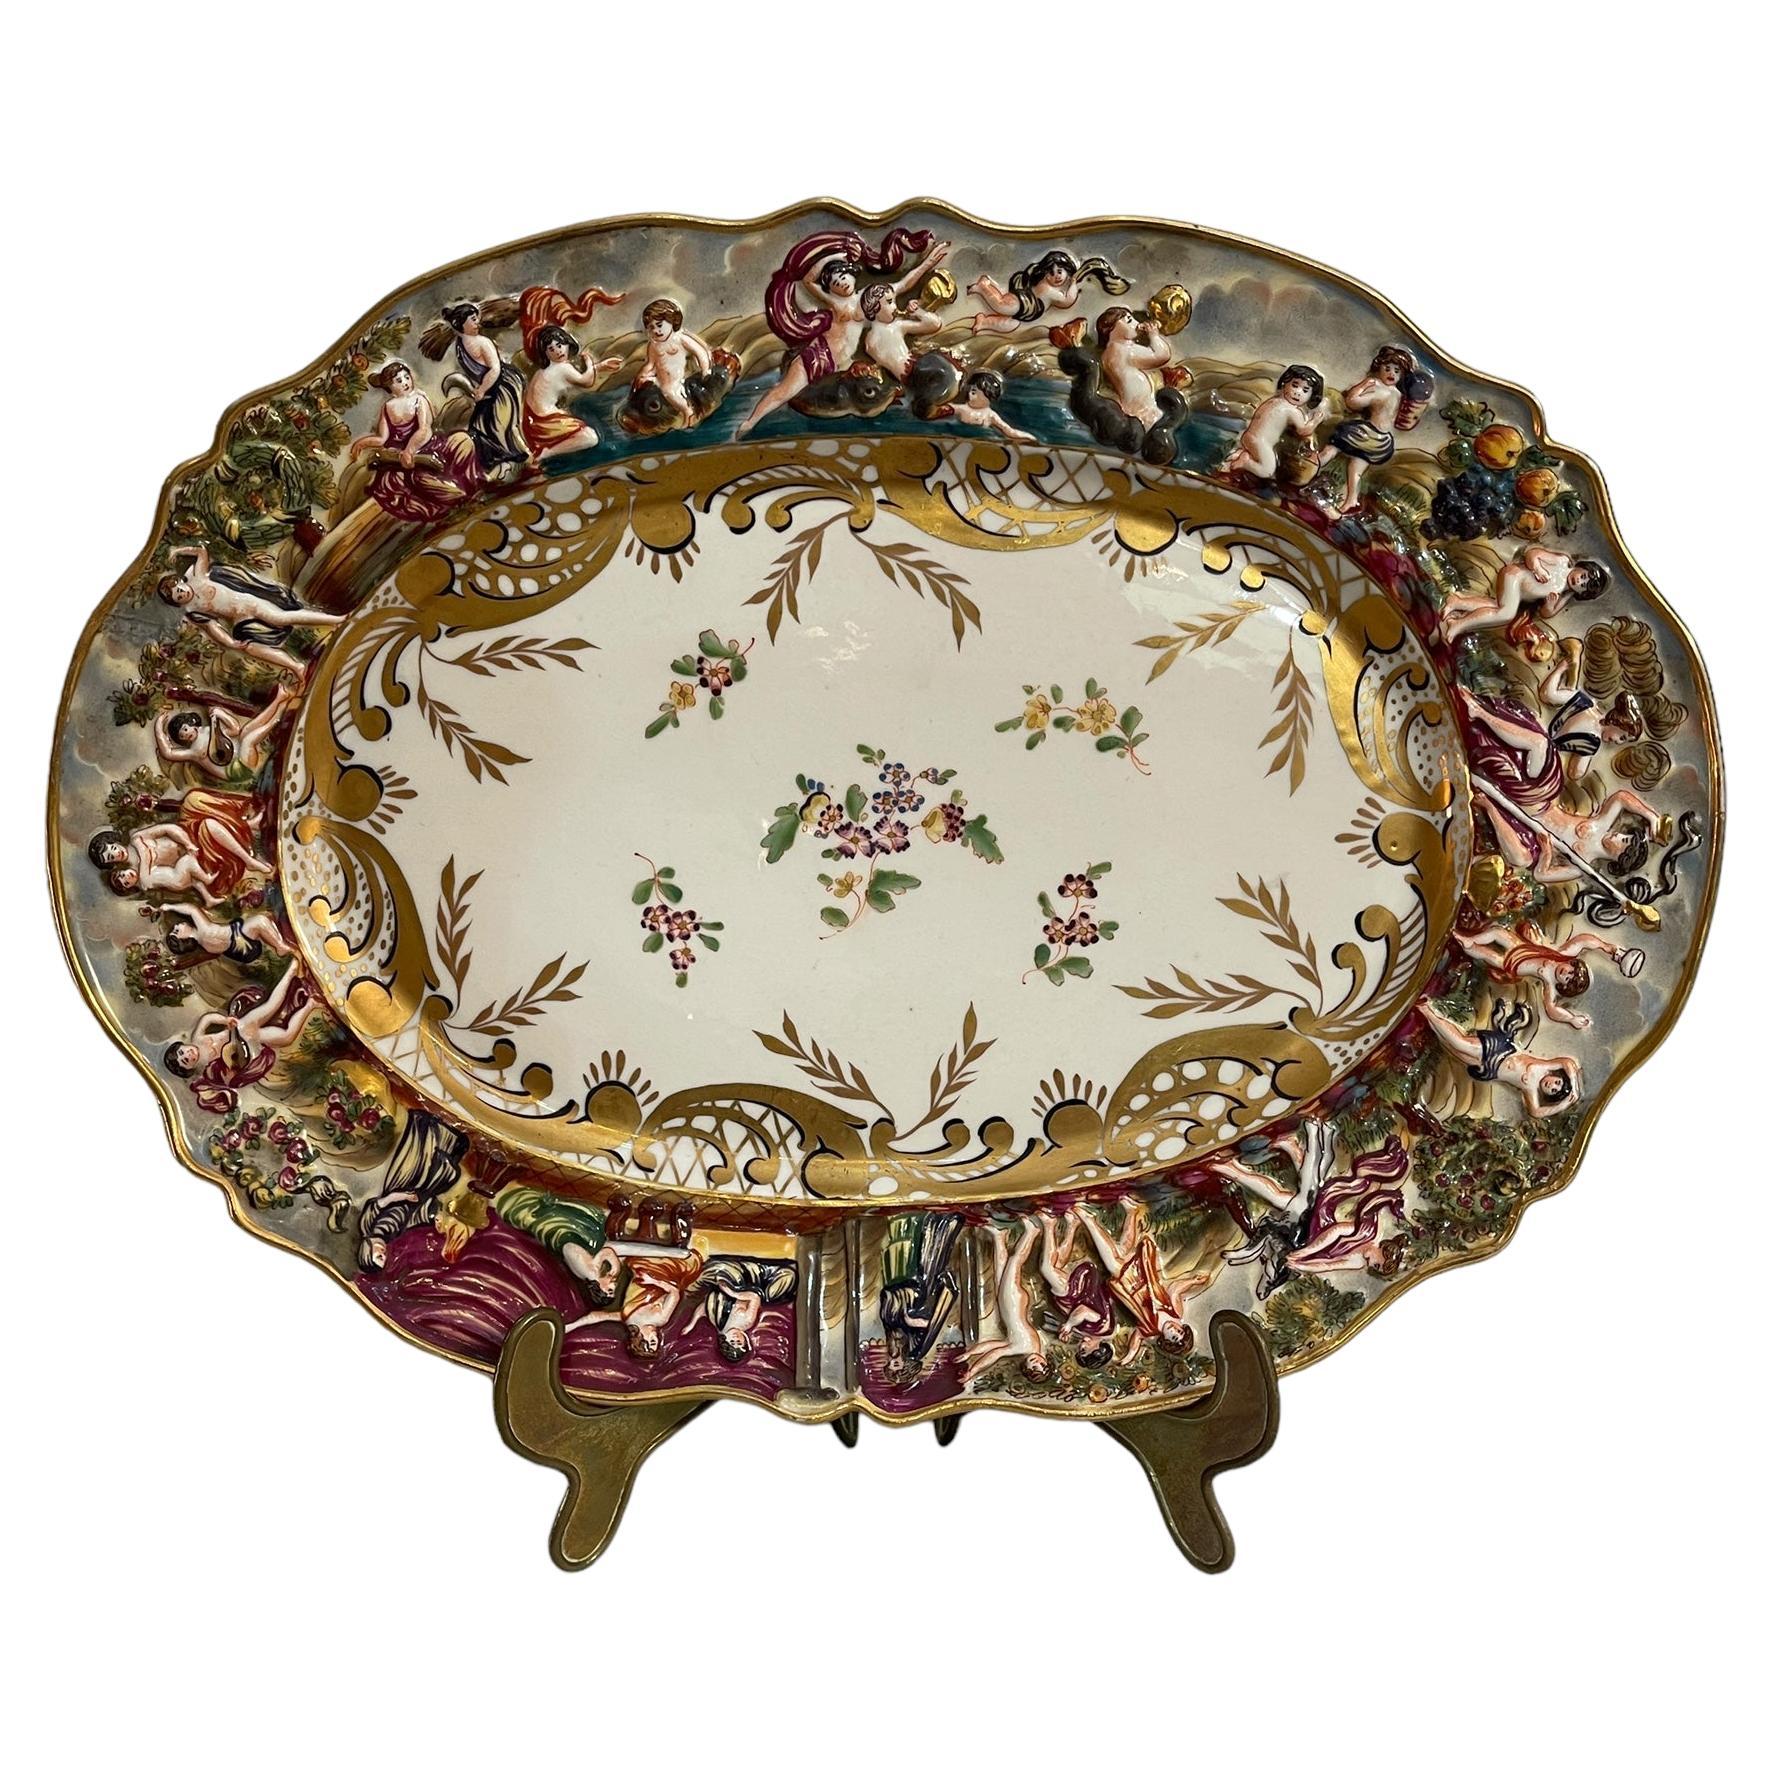 Bearbeitete und verzierte Keramikplatte, Capodimonte, 19.-20. Jahrhundert